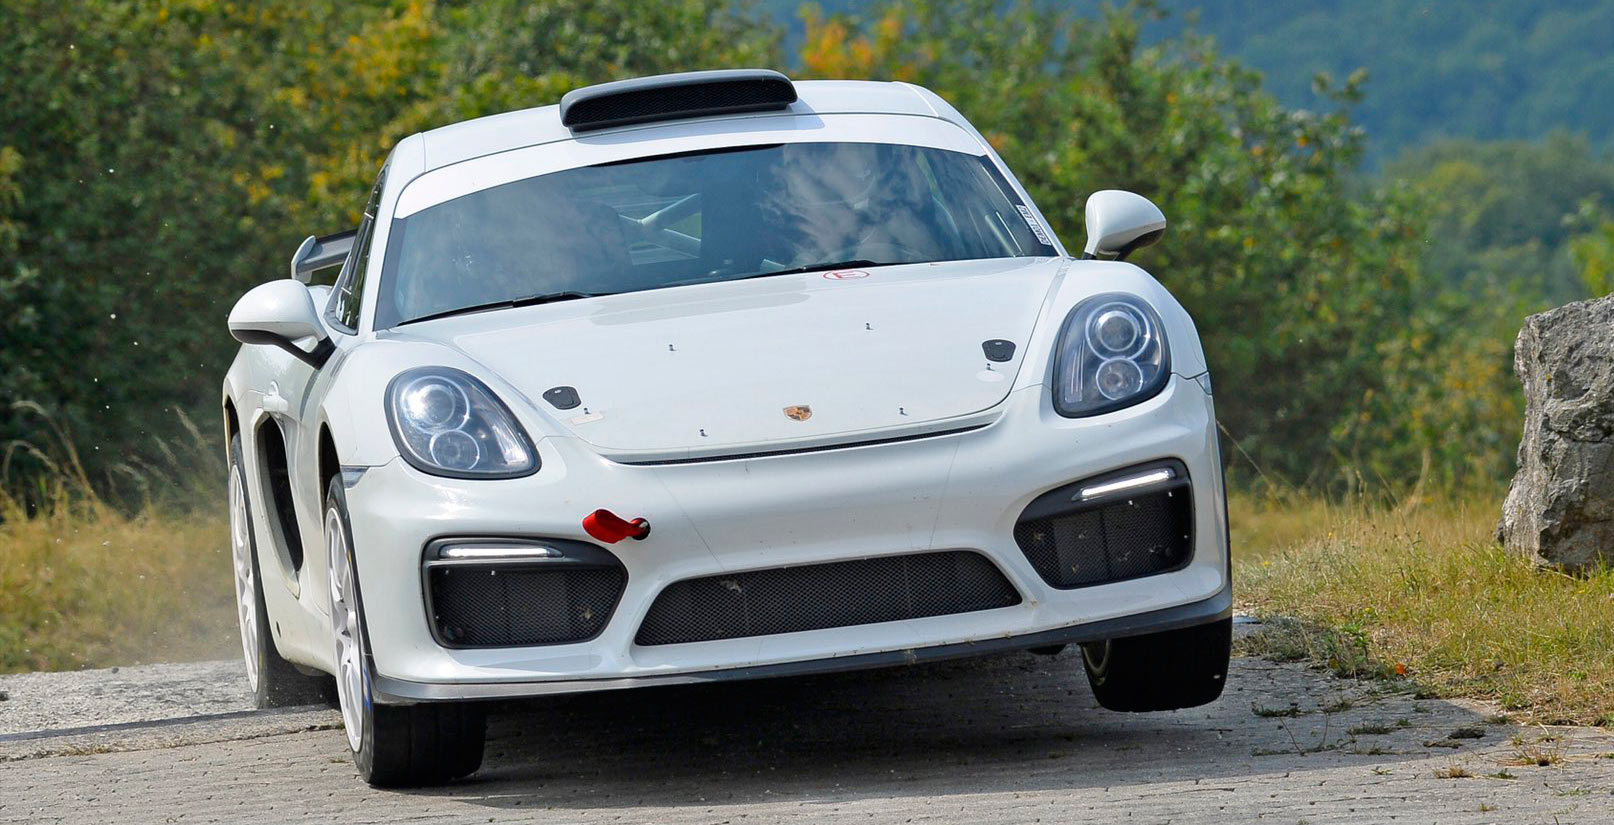 Berita, 99f090f9-porsche-cayman-gt4-clubsport-rallye-concept-6: Porsche Cayman GT4 Clubsport Rallye Concept, Porsche Penyuka Tanah?